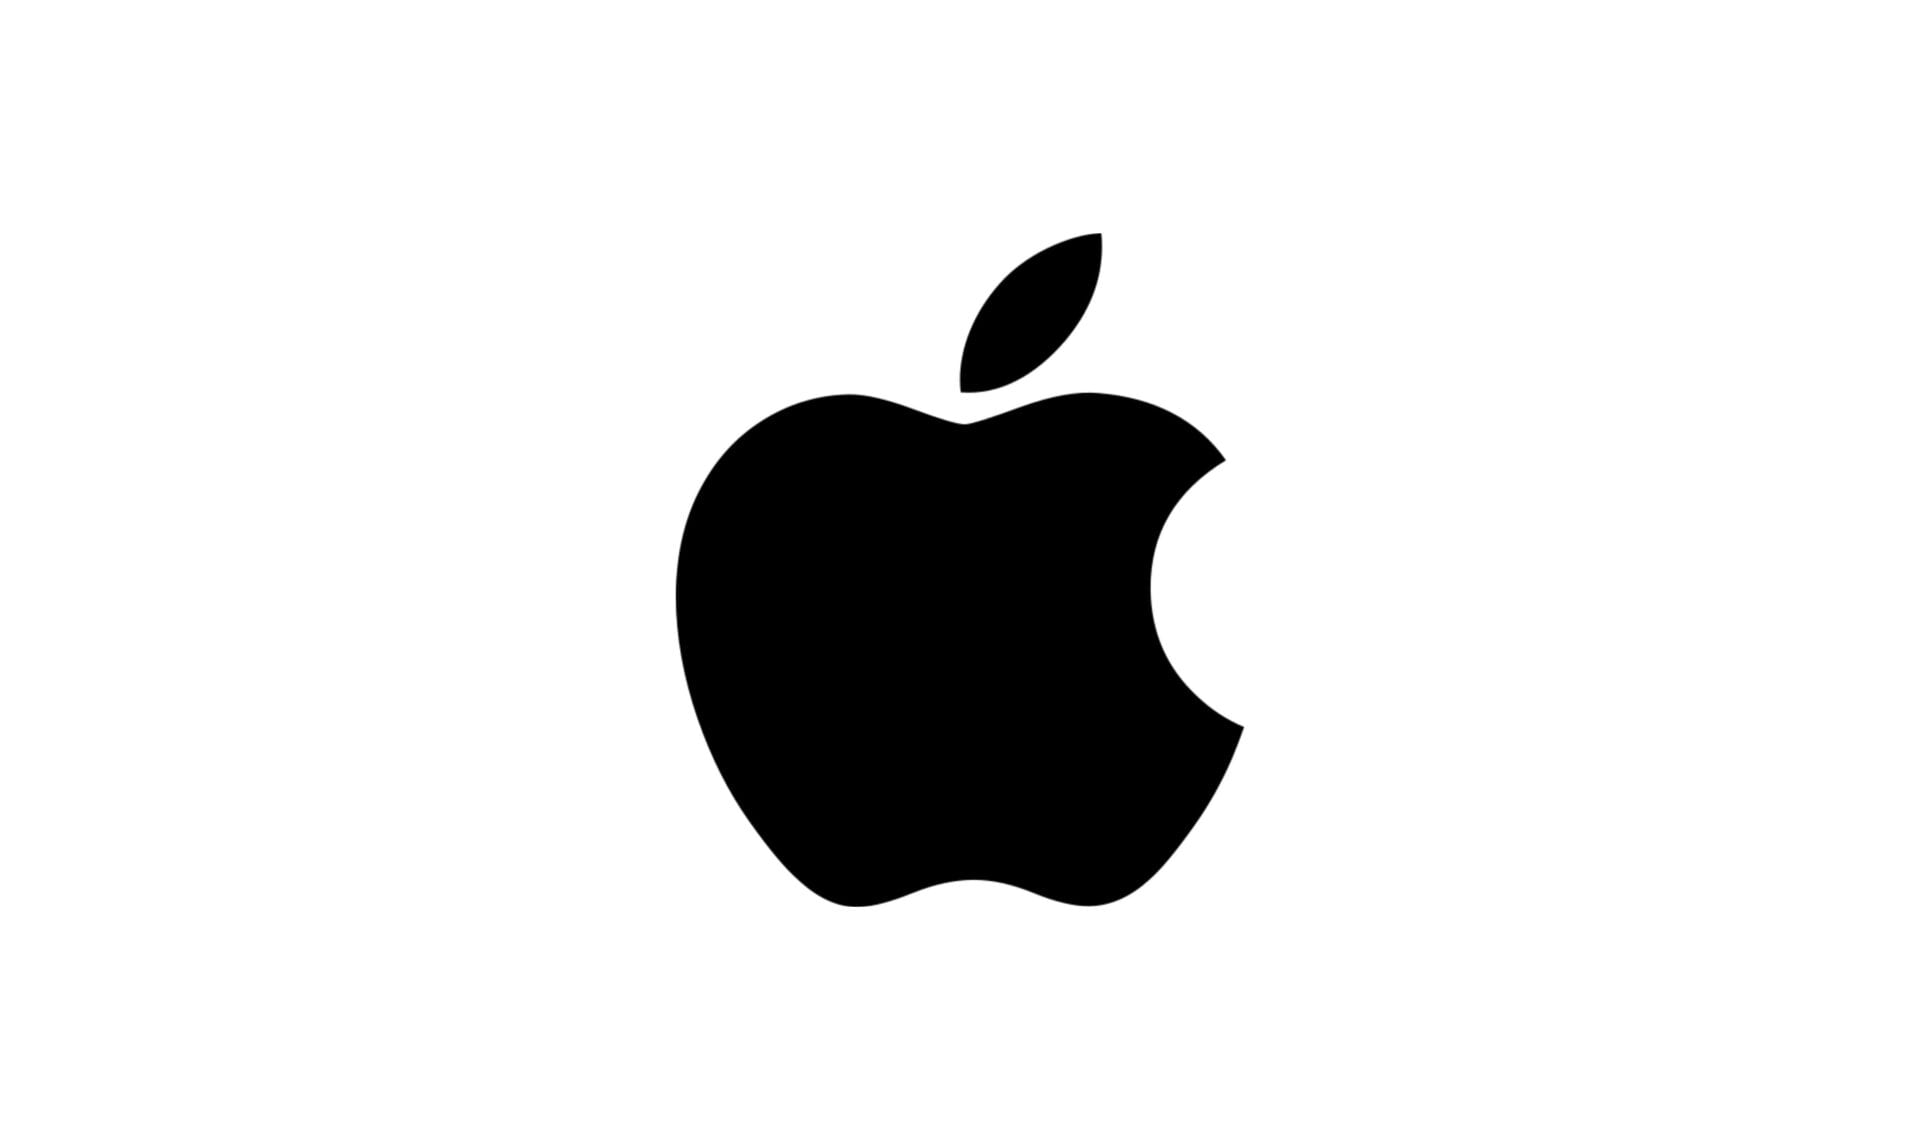 As especificações do Apple iPhone 13 e iPhone SE 3 surgem de fontes confiáveis